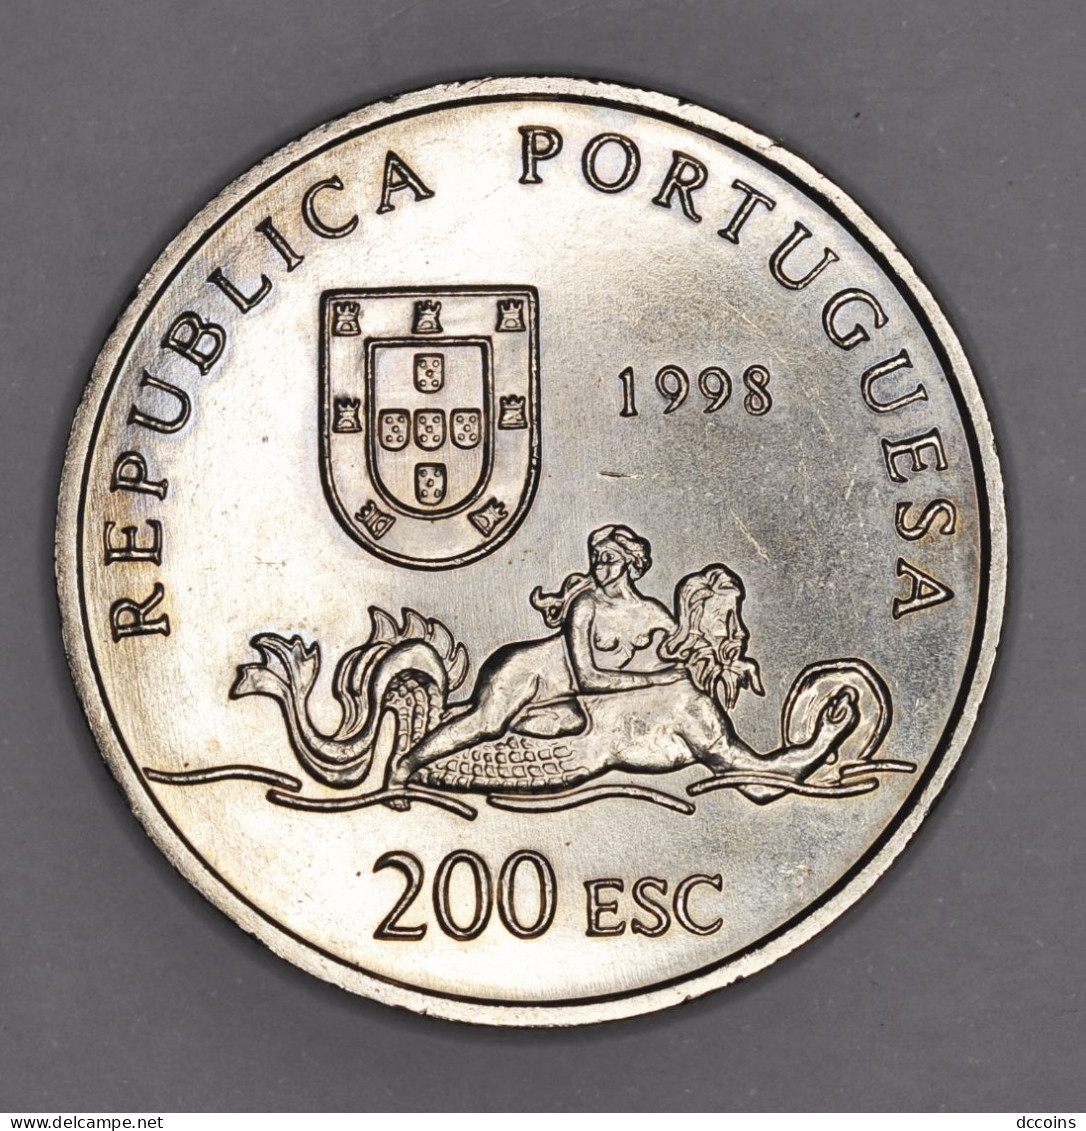 Descobrimentos Portugueses 9ª Serie 200  Esc. Moçambique Year 1998 - Portugal